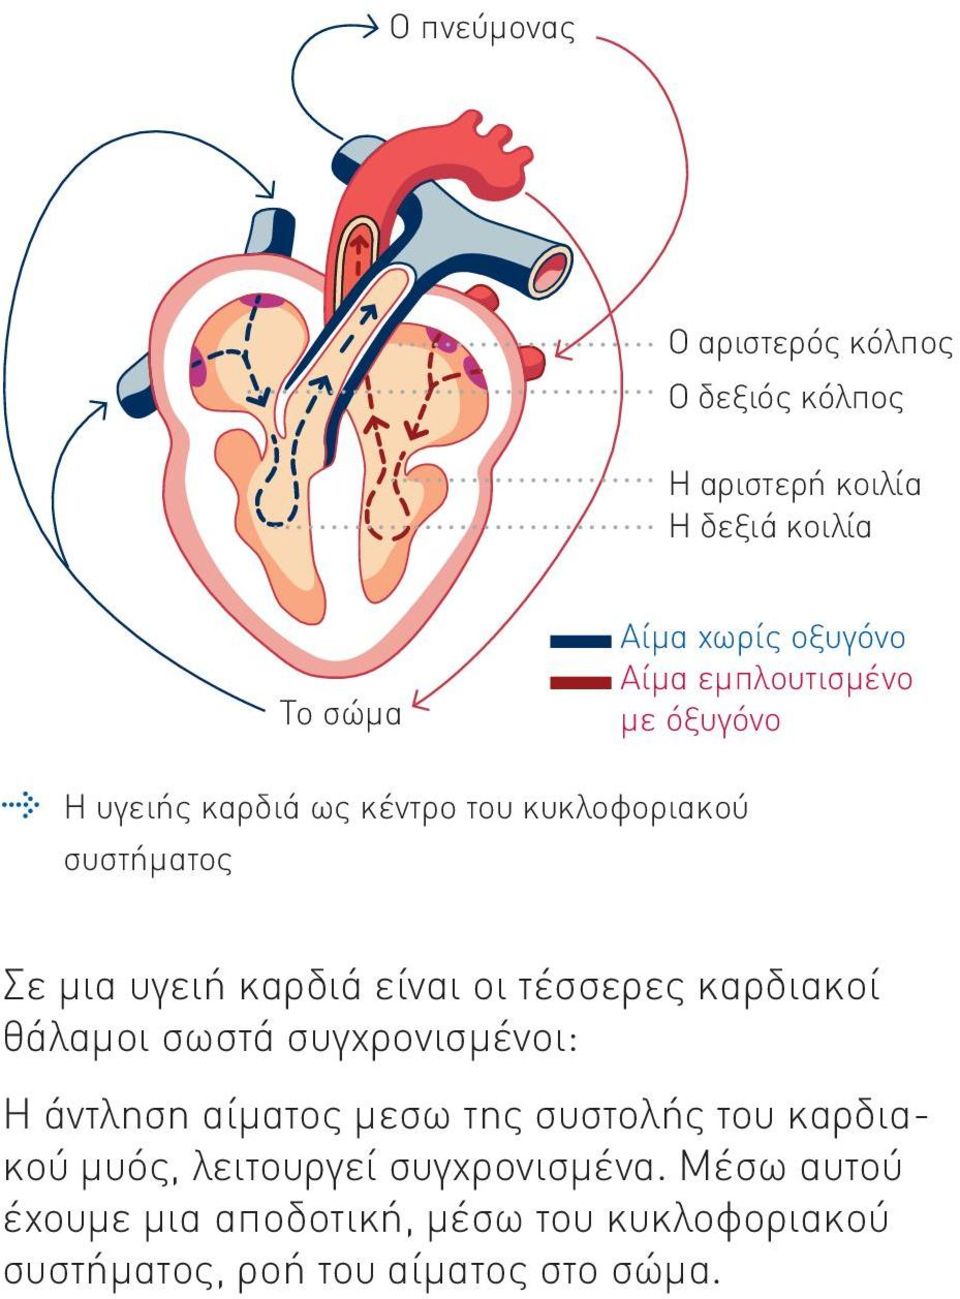 τέσσερες καρδιακοί θάλαμοι σωστά συγχρονισμένοι: Η άντληση αίματος μεσω της συστολής του καρδιακού μυός,